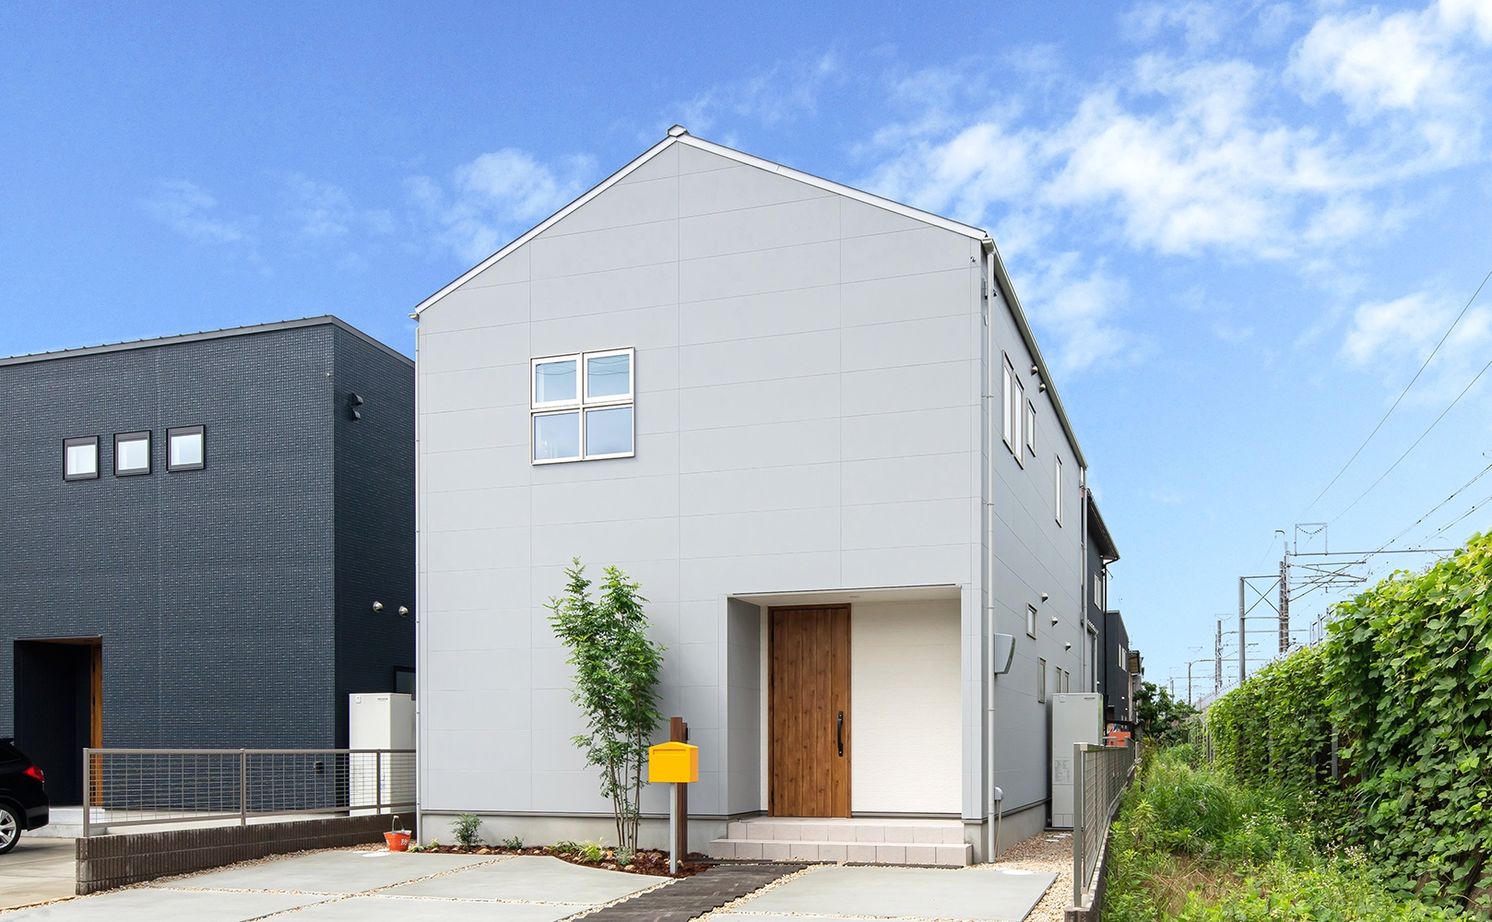 Suumo 1654万円 おしゃれな階段のある三角屋根の家 家事ラクの間取りもお気に入り シンプルハウス の建築実例詳細 注文住宅